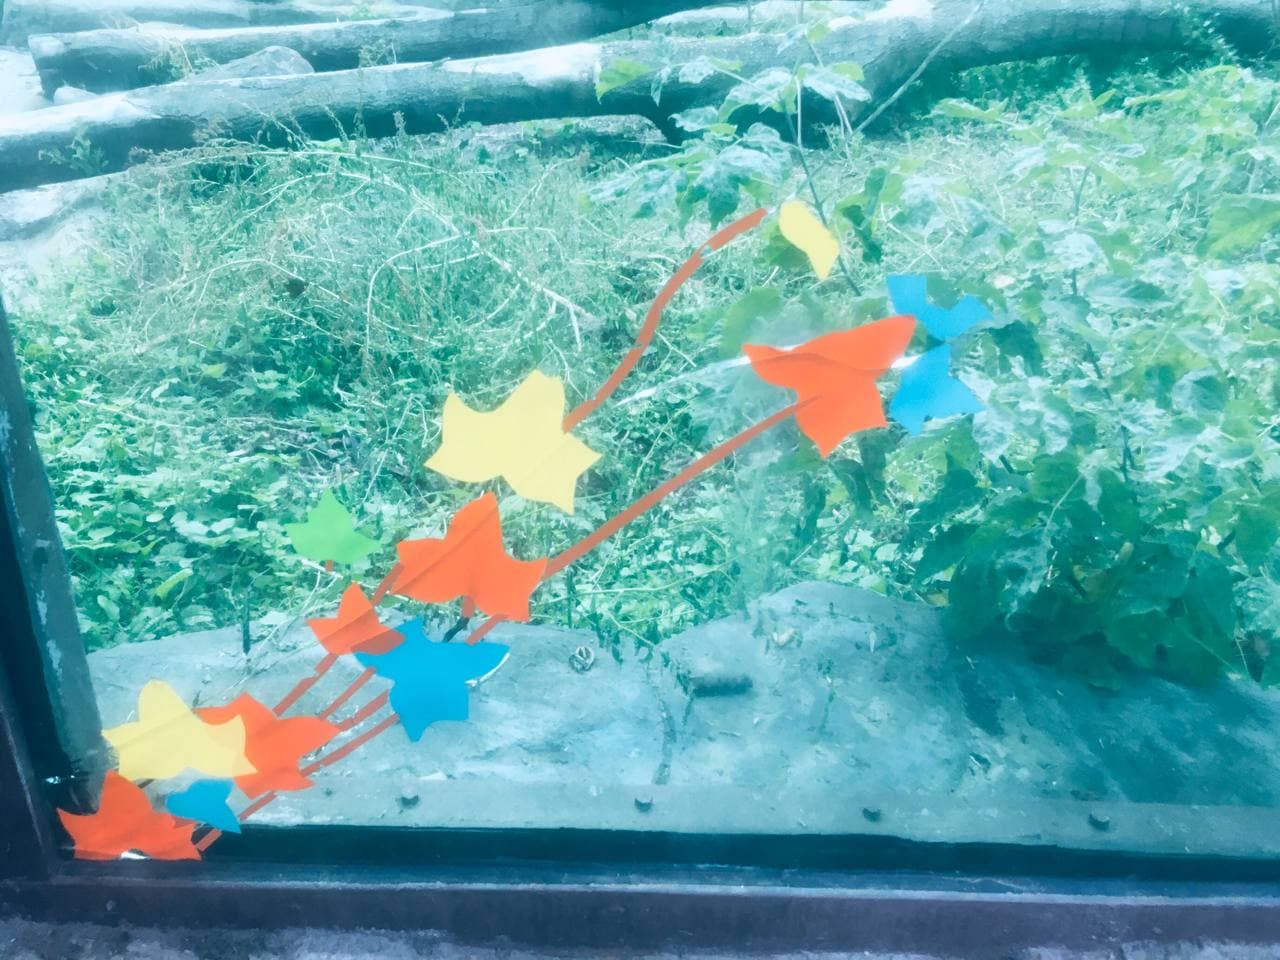 В киевском зоопарке треснувшее стекло в вольере с медведями заклеили аппликацией (фото)